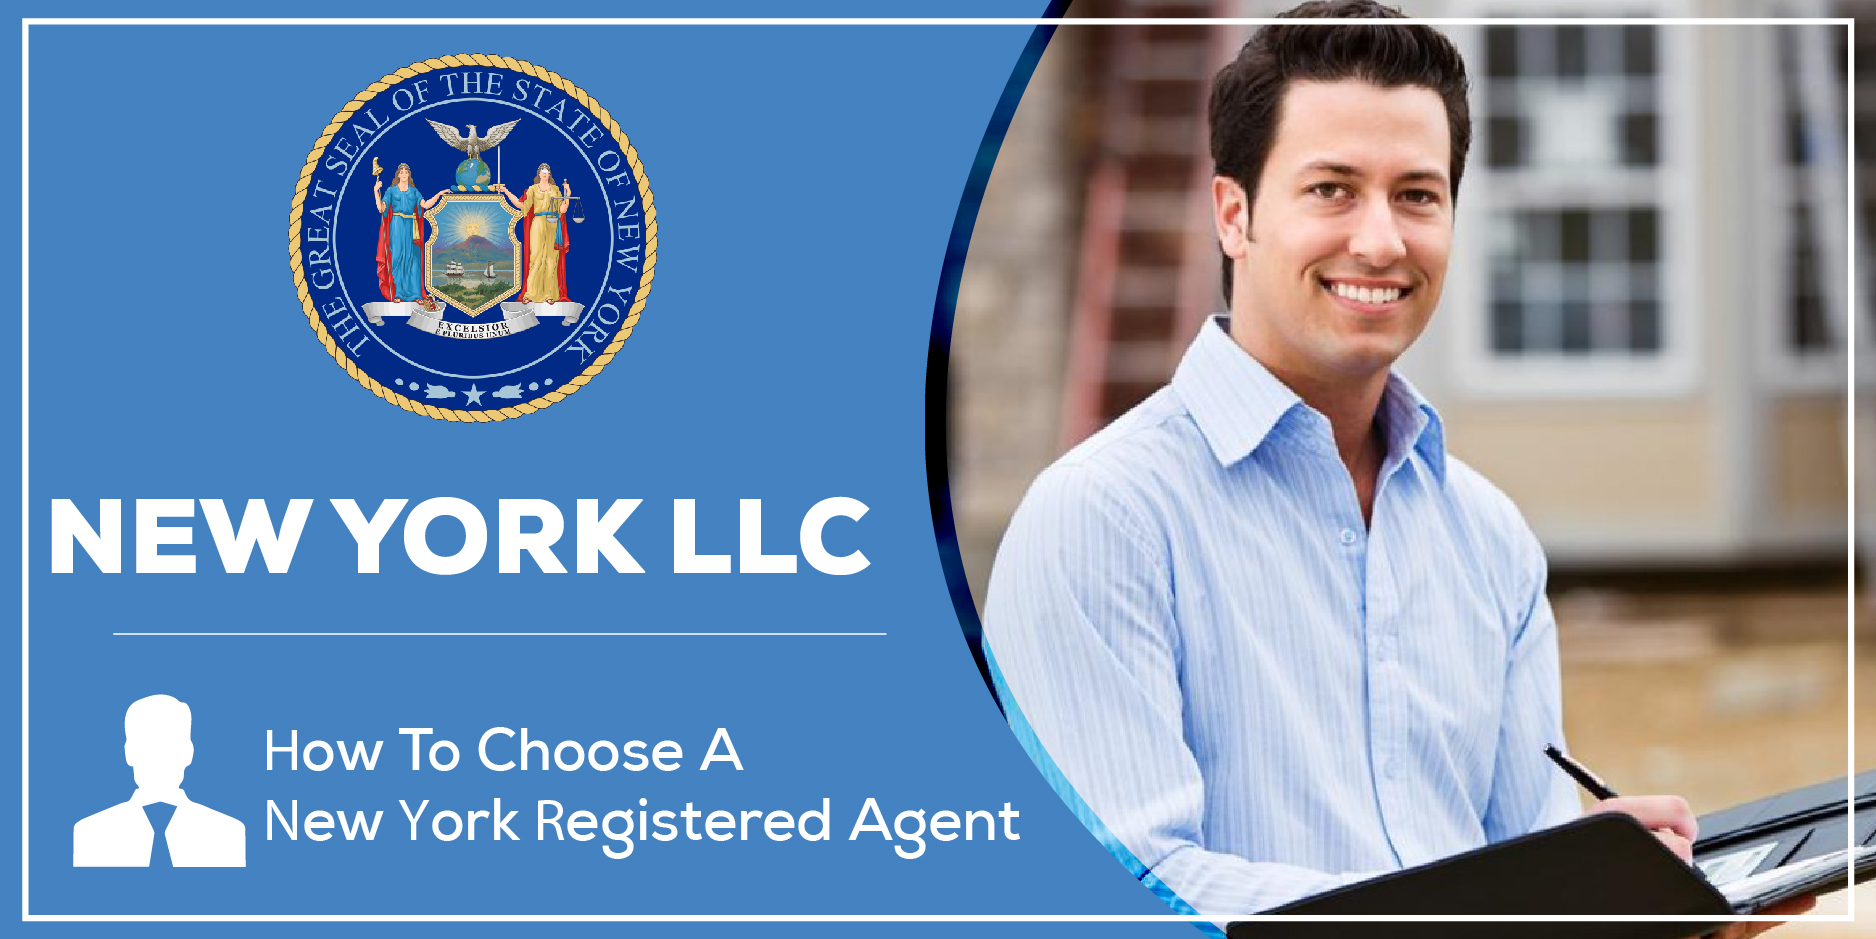 New York Registered Agent